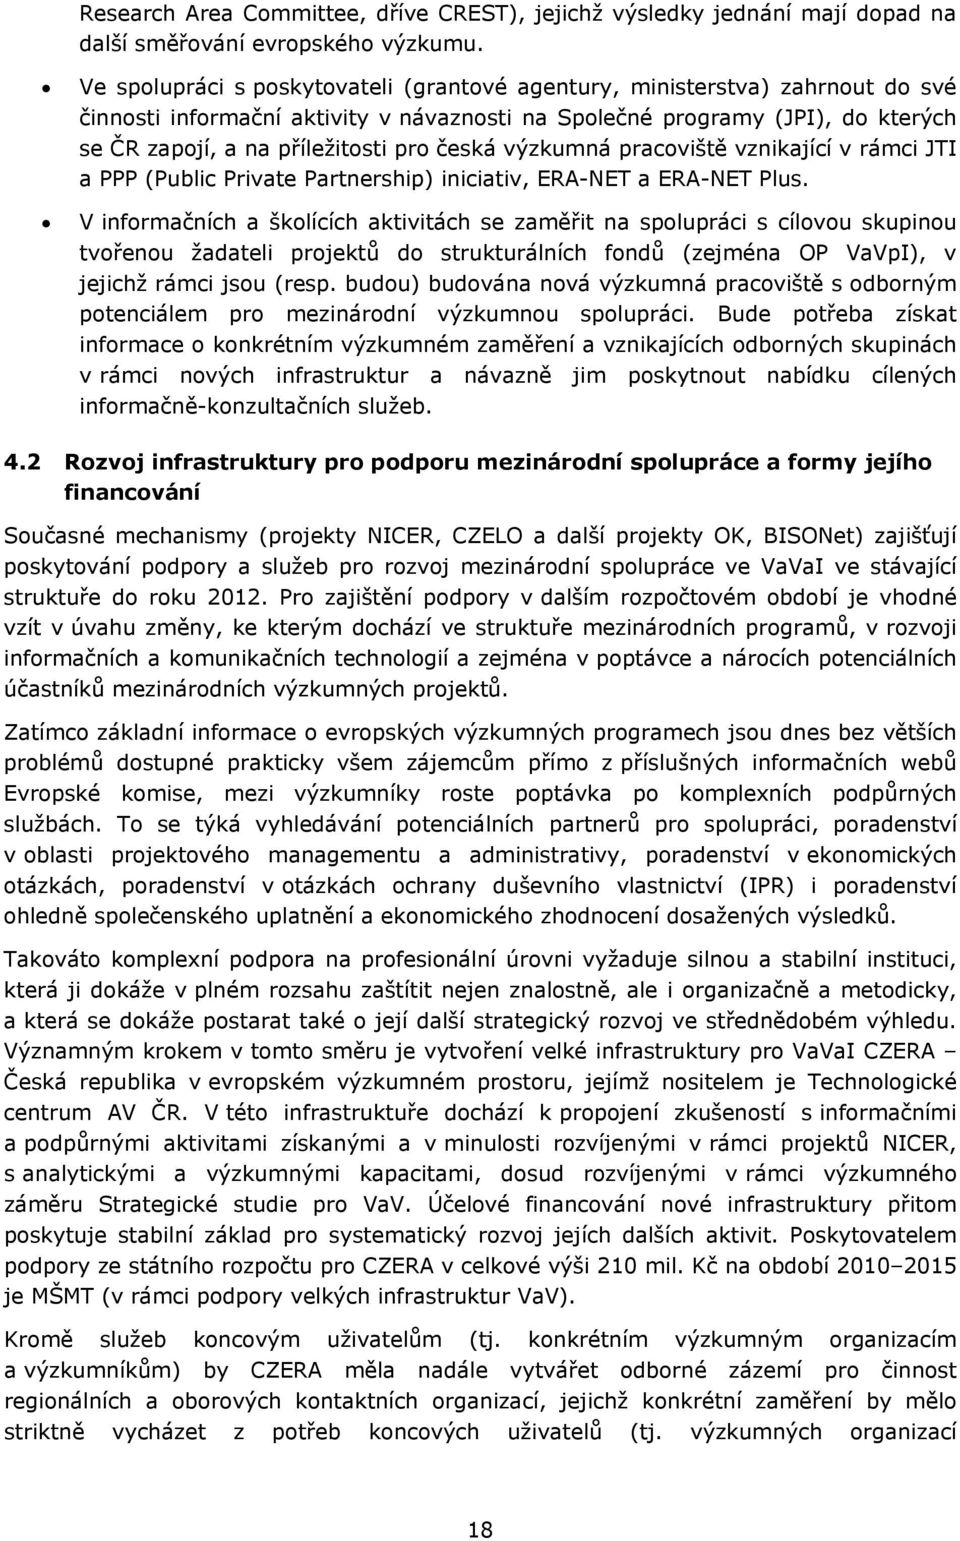 česká výzkumná pracoviště vznikající v rámci JTI a PPP (Public Private Partnership) iniciativ, ERA-NET a ERA-NET Plus.